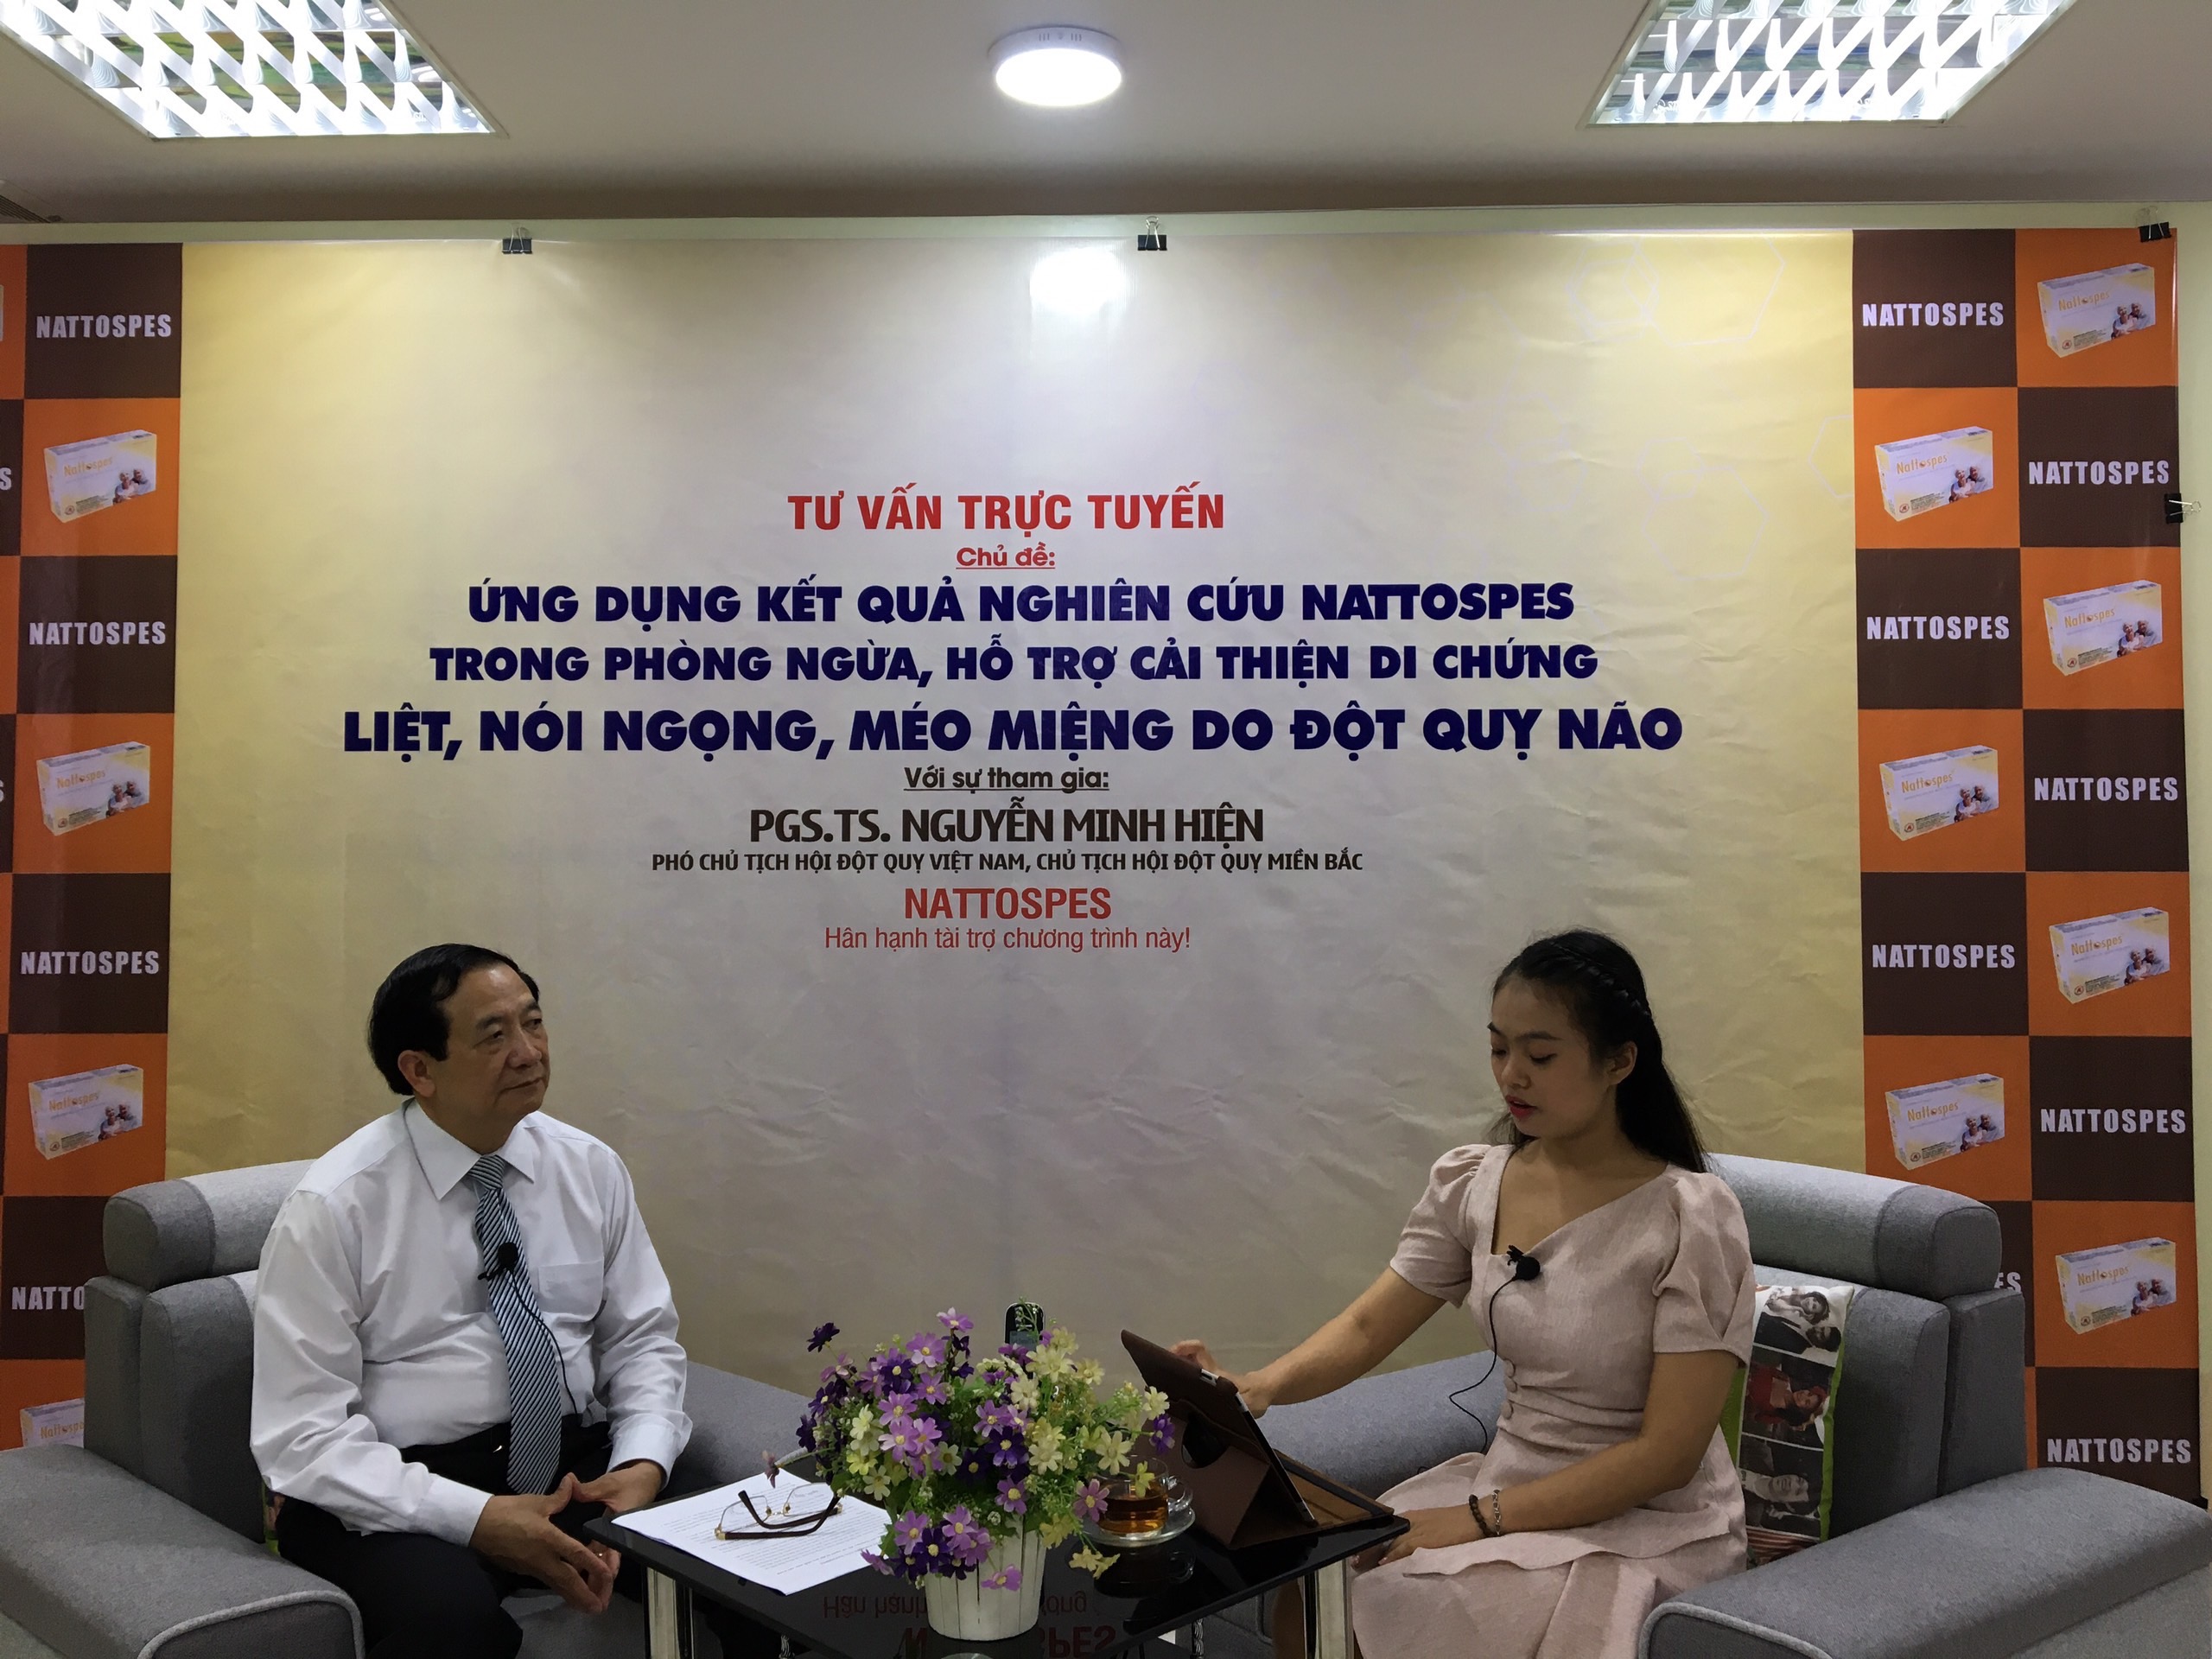 Giao lưu trực tuyến cùng chuyên gia Nguyễn Minh Hiện